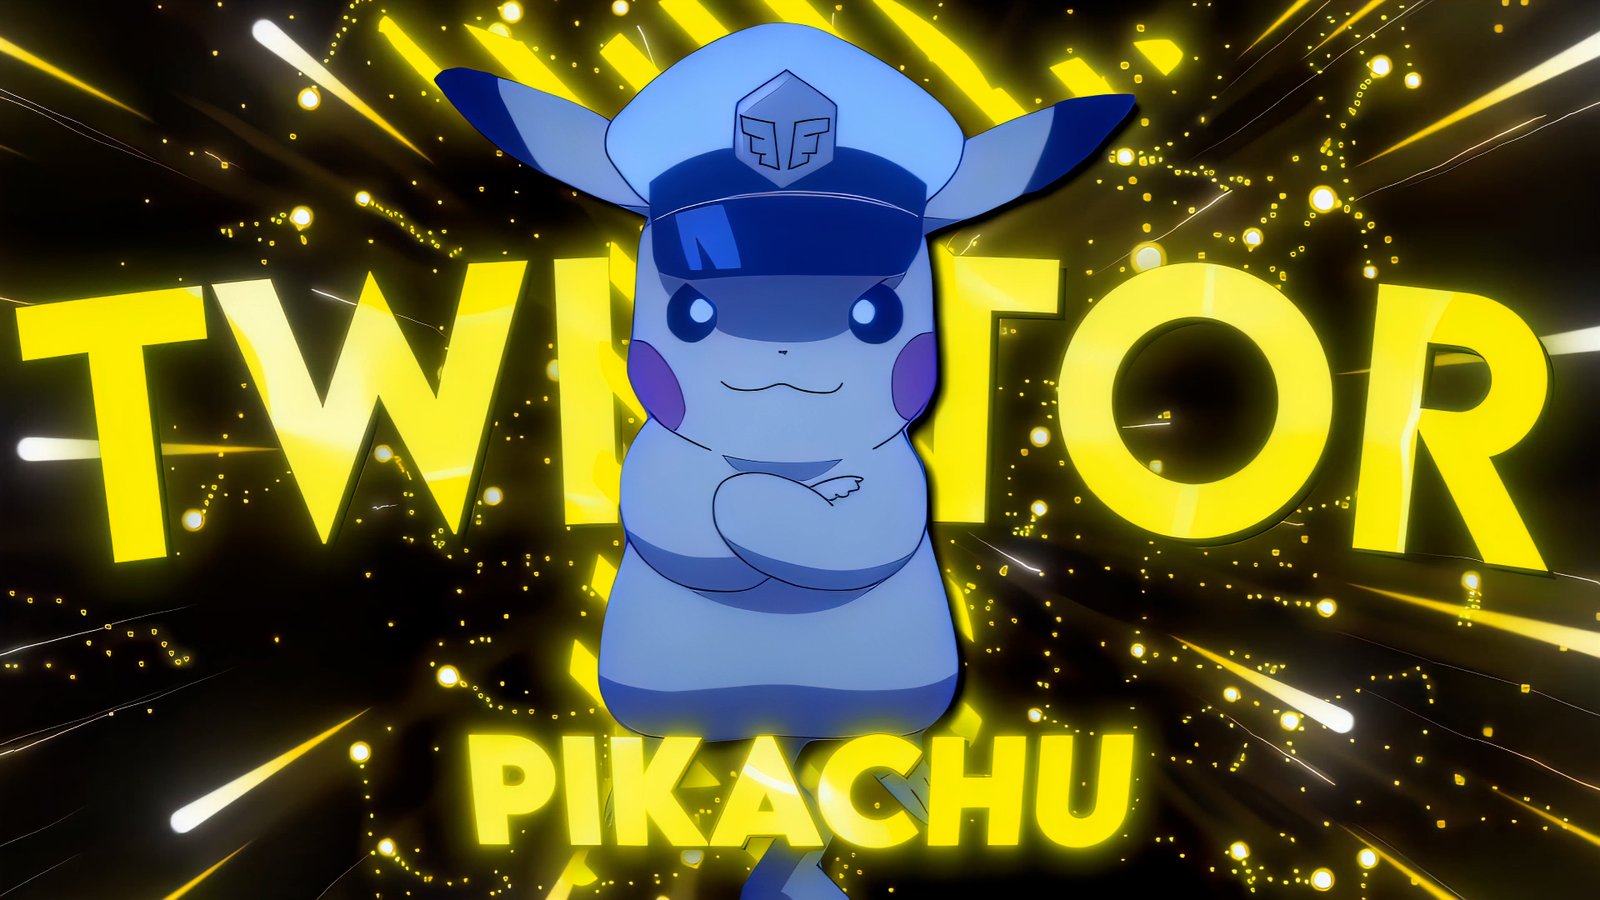 Pikachu Twixtor